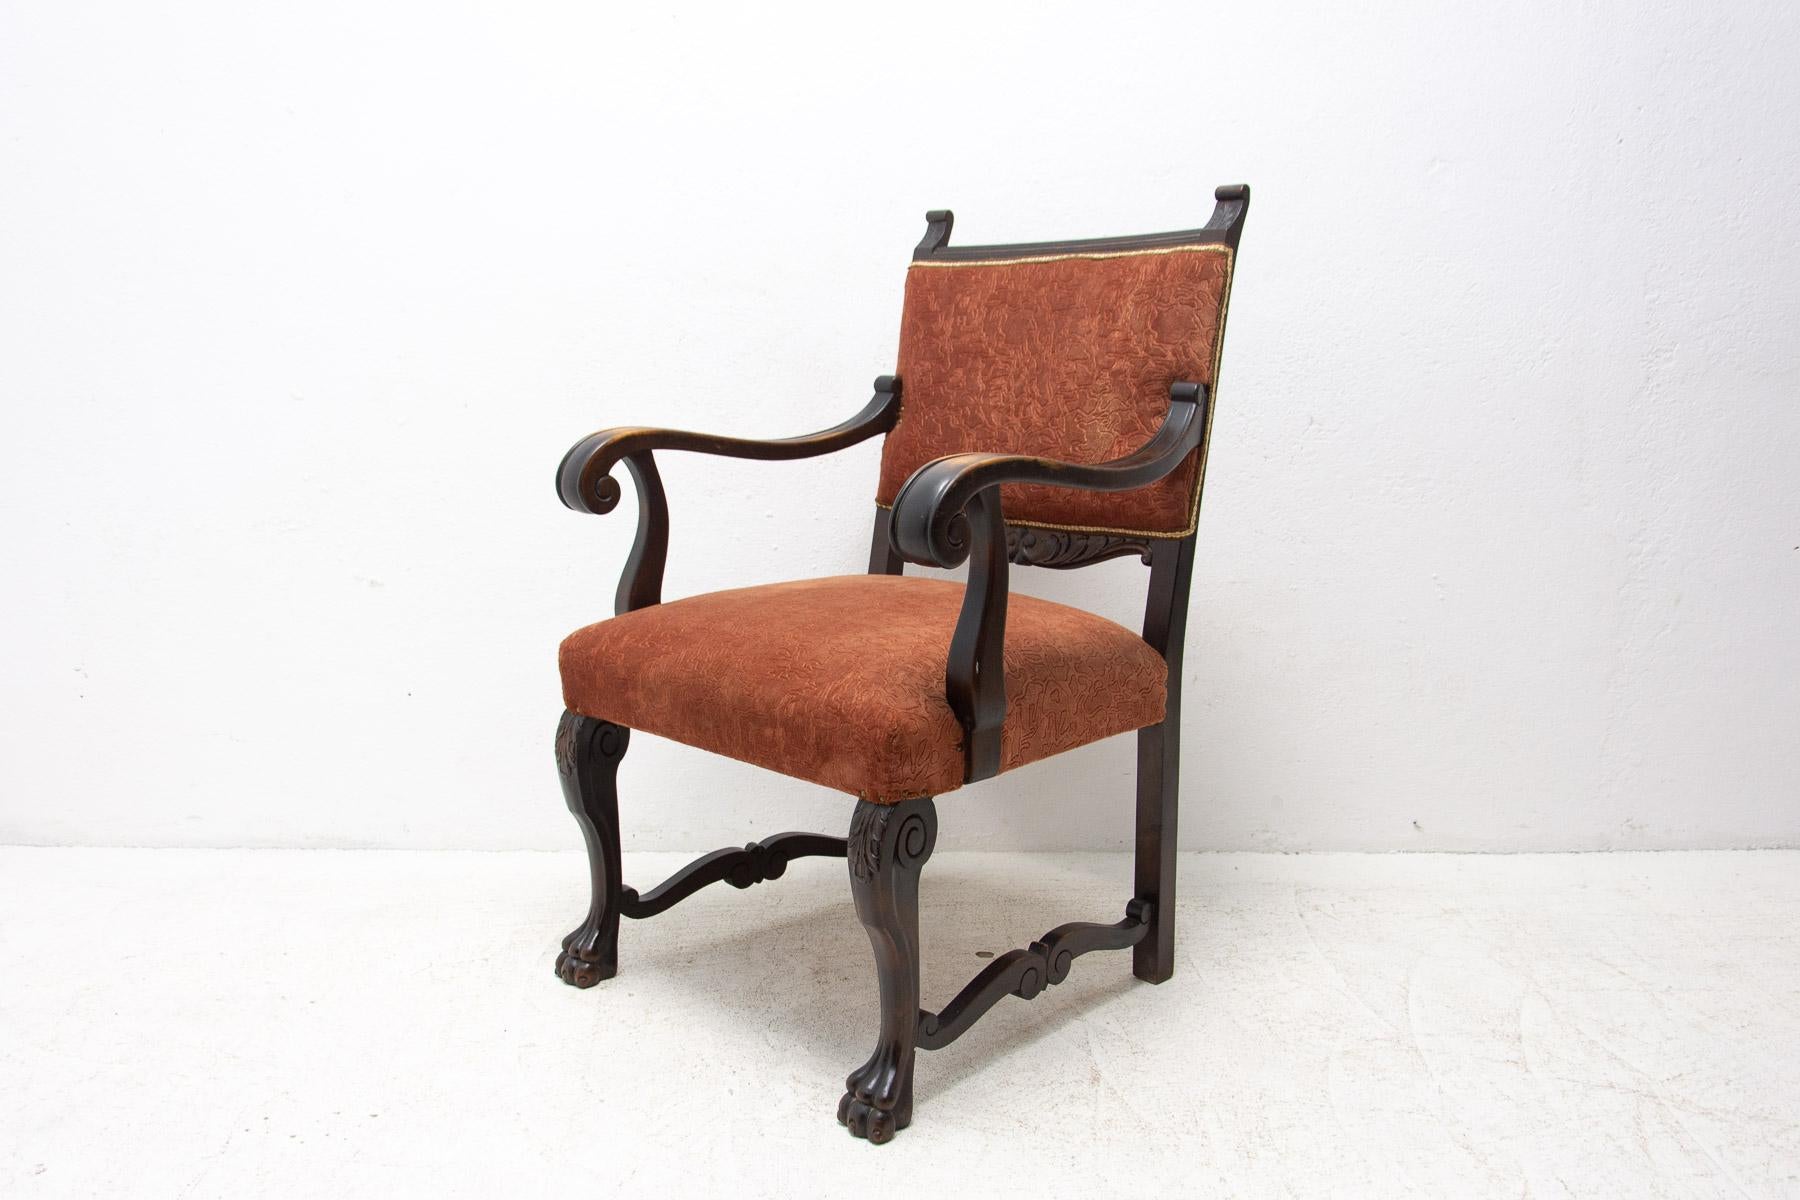 Er wurde in der zweiten Hälfte des 19. Jahrhunderts von einem geschickten Schnitzer aus Eichenholz gefertigt. Hochwertiger, breiter und bequemer Sessel im Geist der aristokratischen Romantik. Er ist mit elegant geformten und weit ausladenden